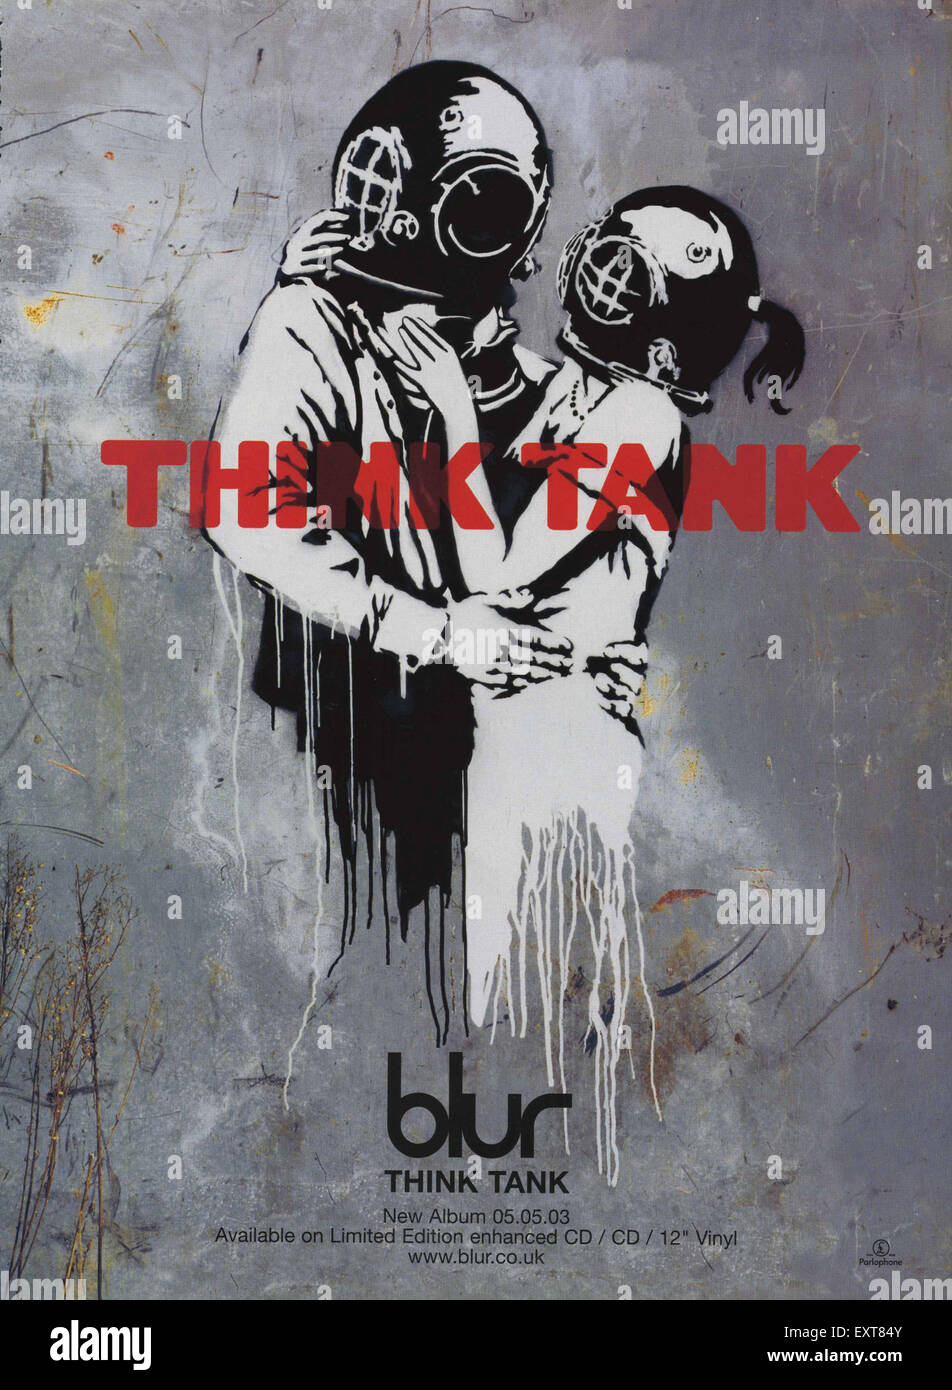 2000s UK Blur Album Cover Stock Photo